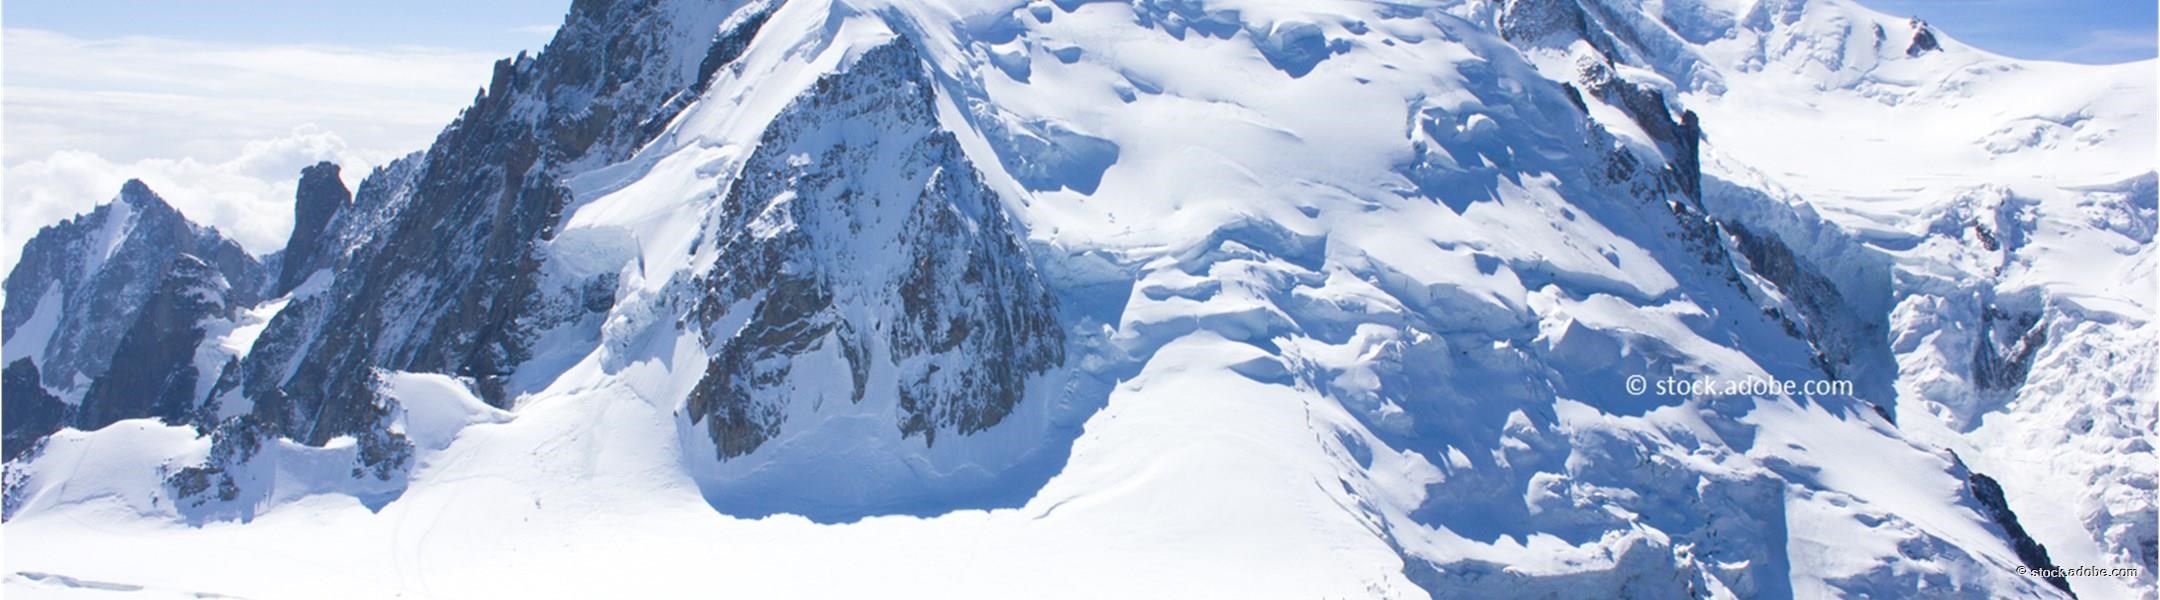 Mont Blanc Massiv 